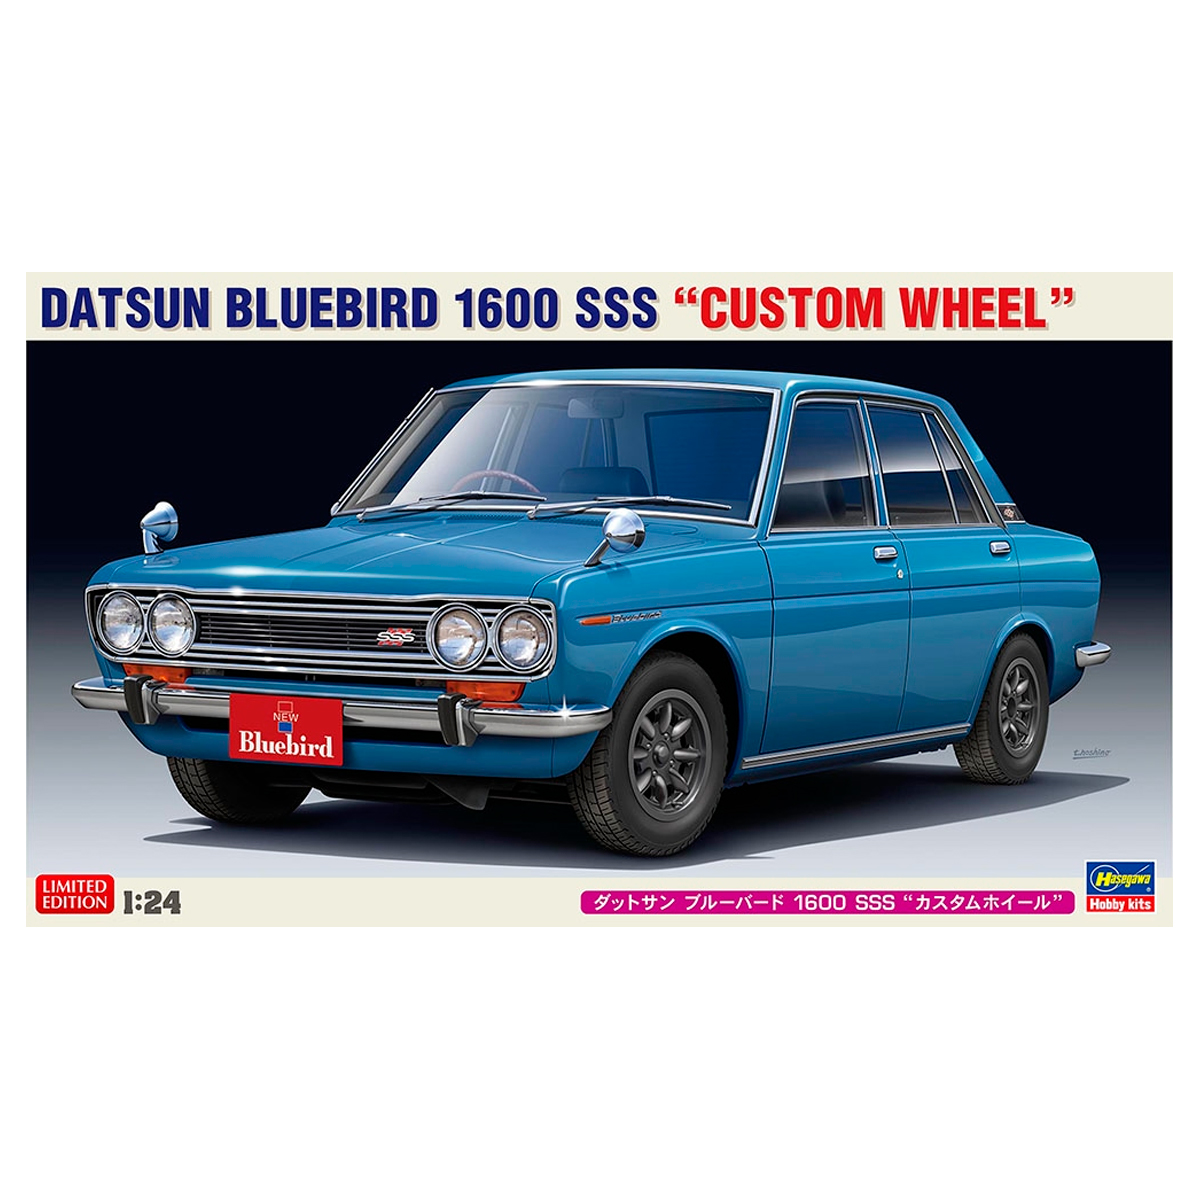 Hasegawa 1/24 Datsun Bluebird 1600 SSS “Custom Wheel” Limited Edition